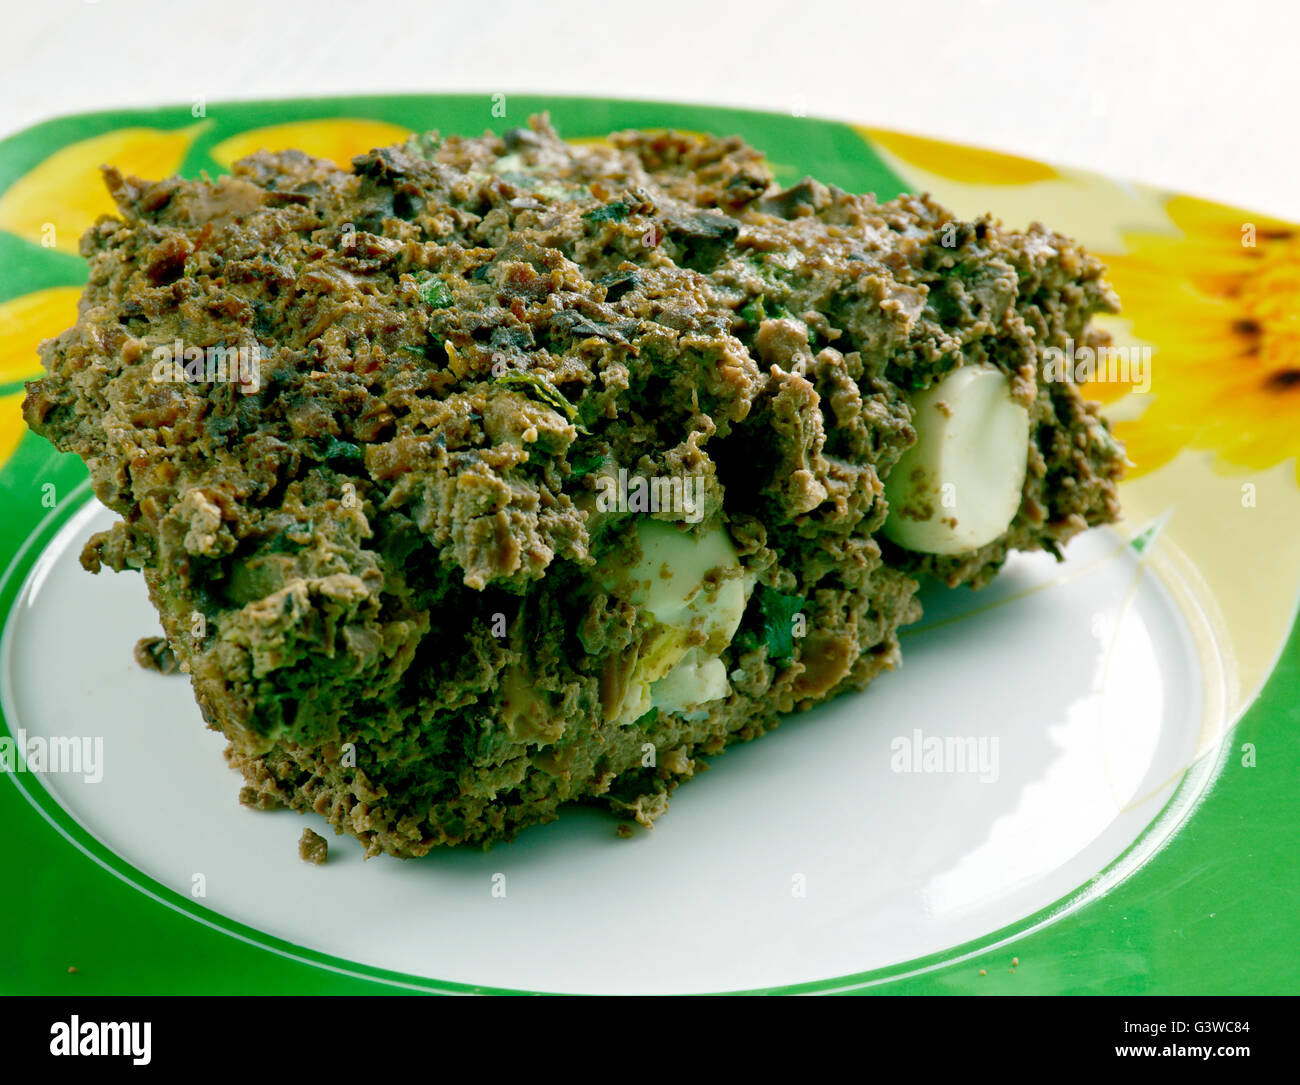 Drob - tradizionale piatto rumeno, simile ad un haggis, fatta di agnello macinata di frattaglie confezionate in omento e arrostito come un polpettone Foto Stock